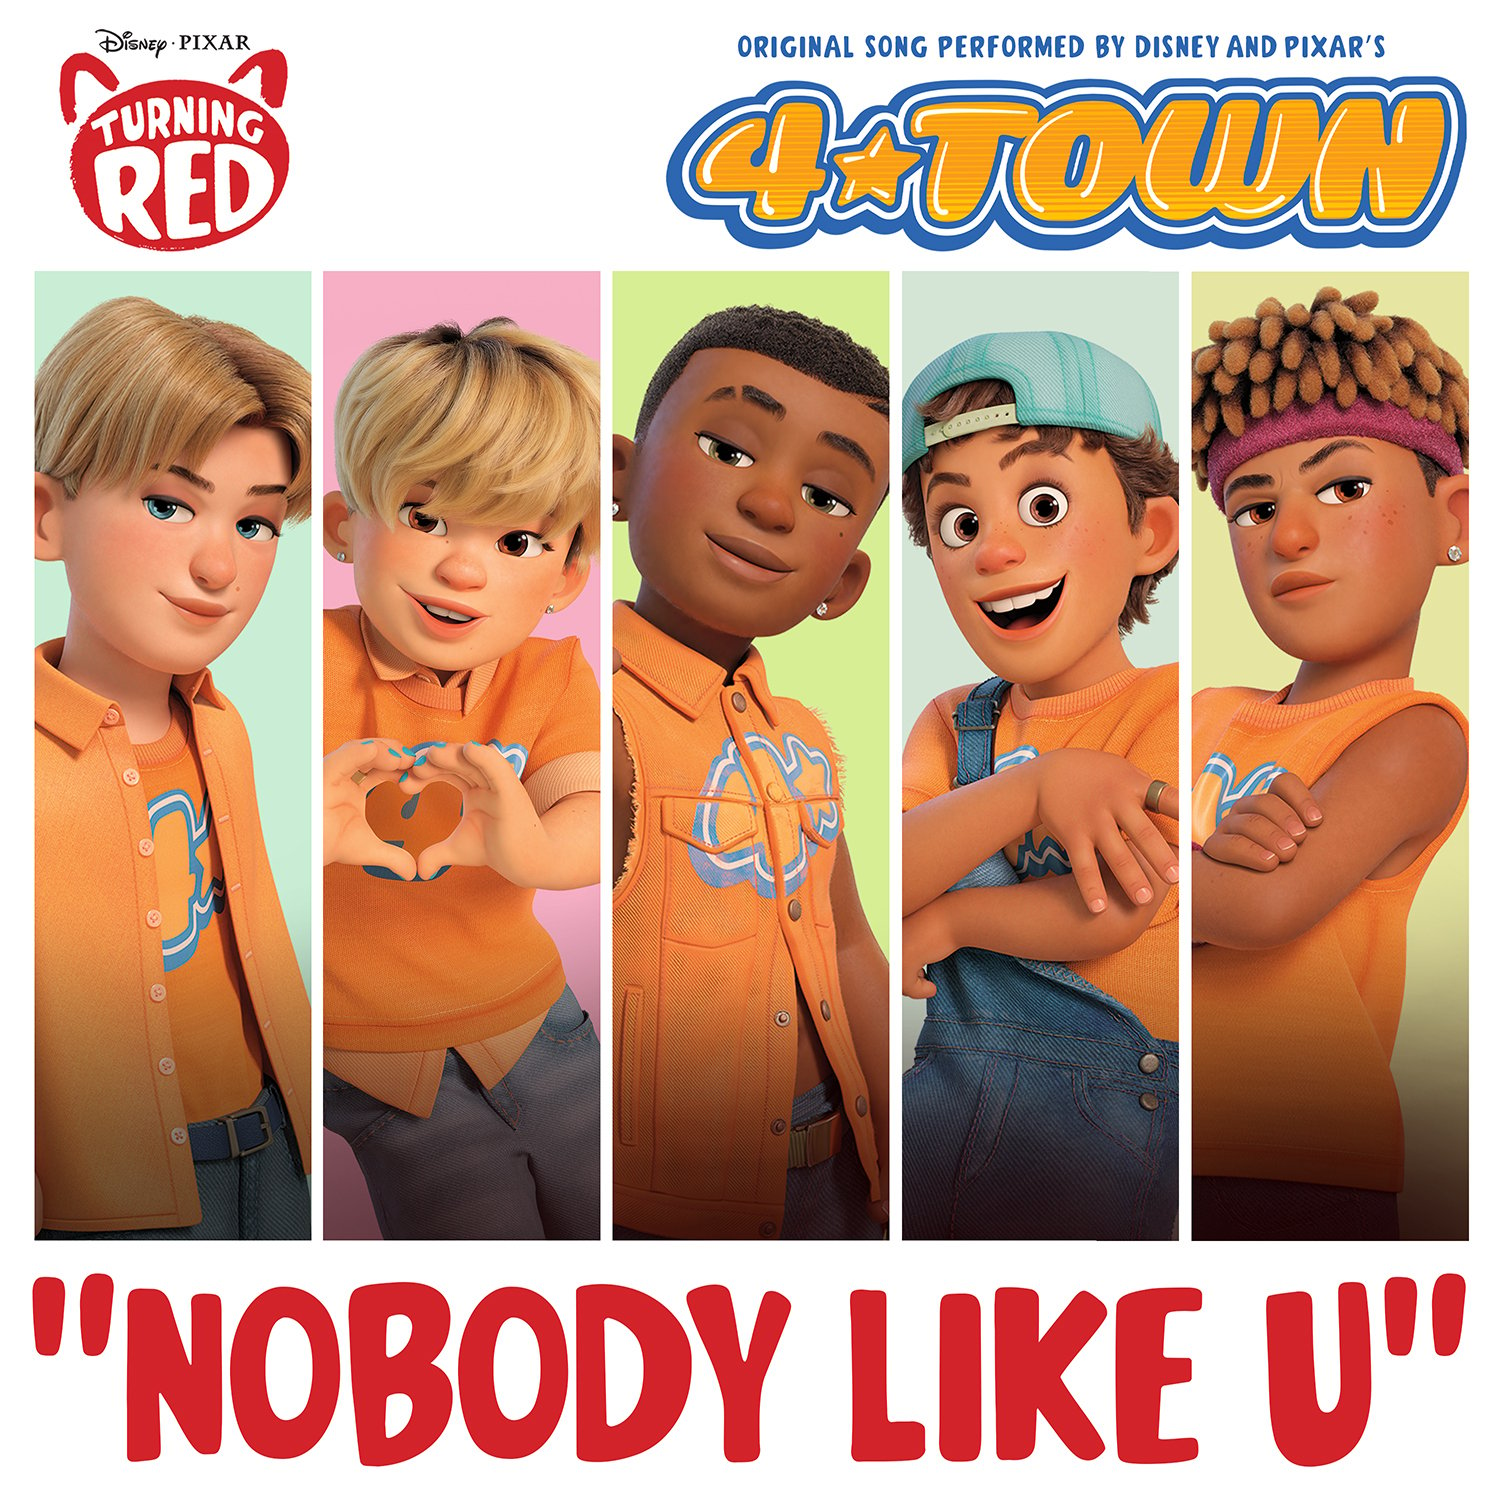 Karakter boy group 4*TOWN dalam film Turning Red. (Sumber gambar: Disney/Pixar)